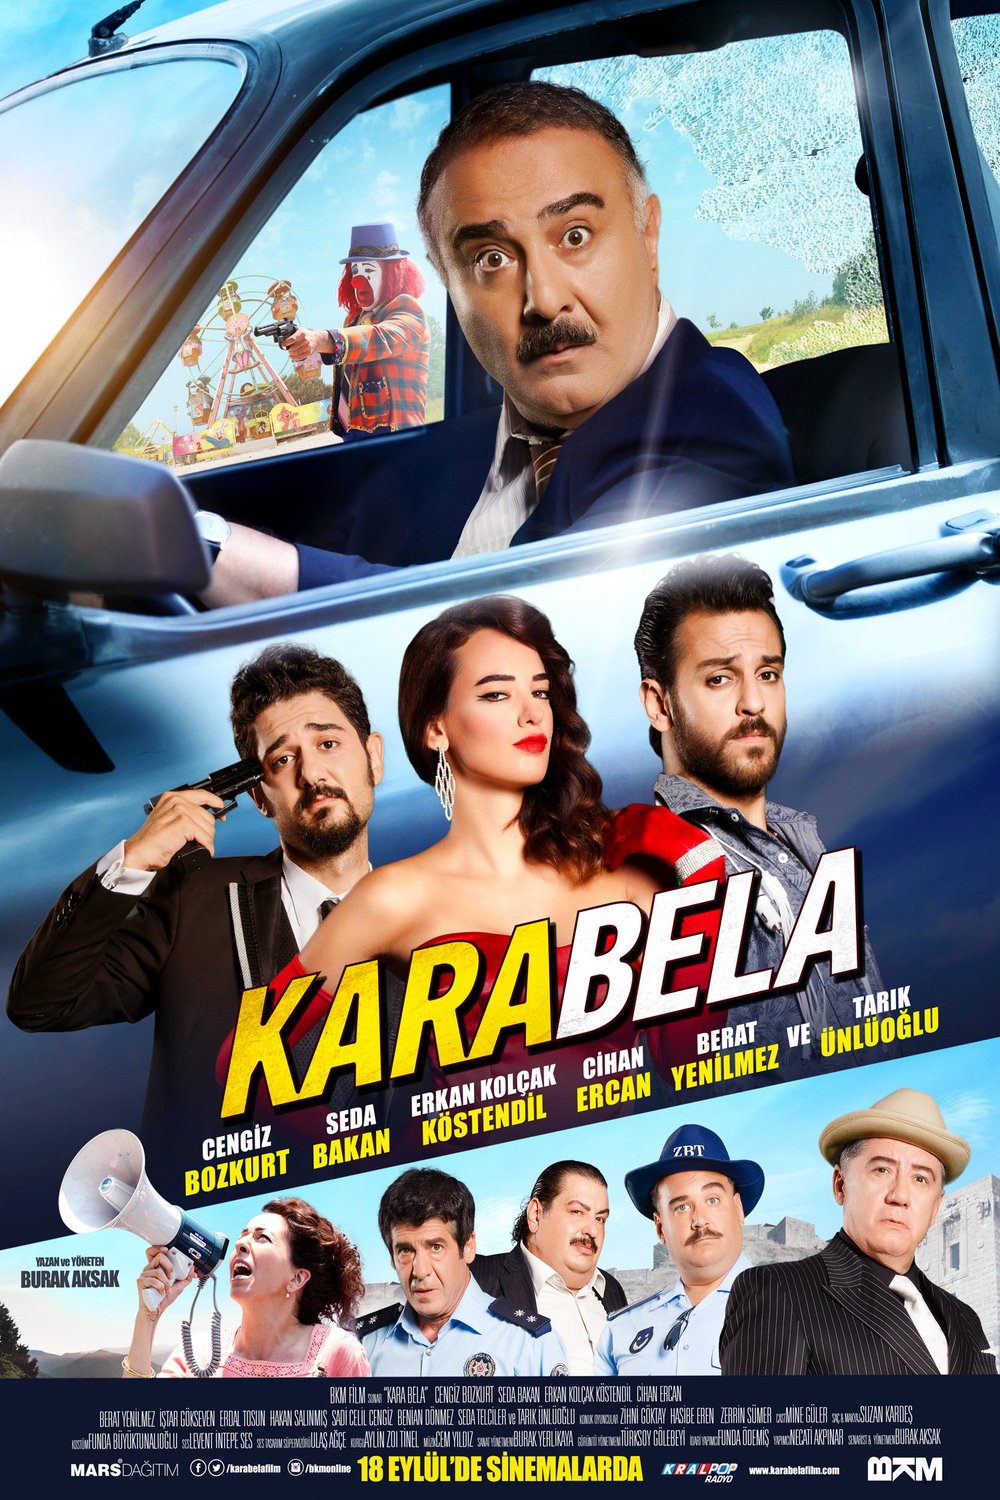 Turkish poster of the movie Kara Bela